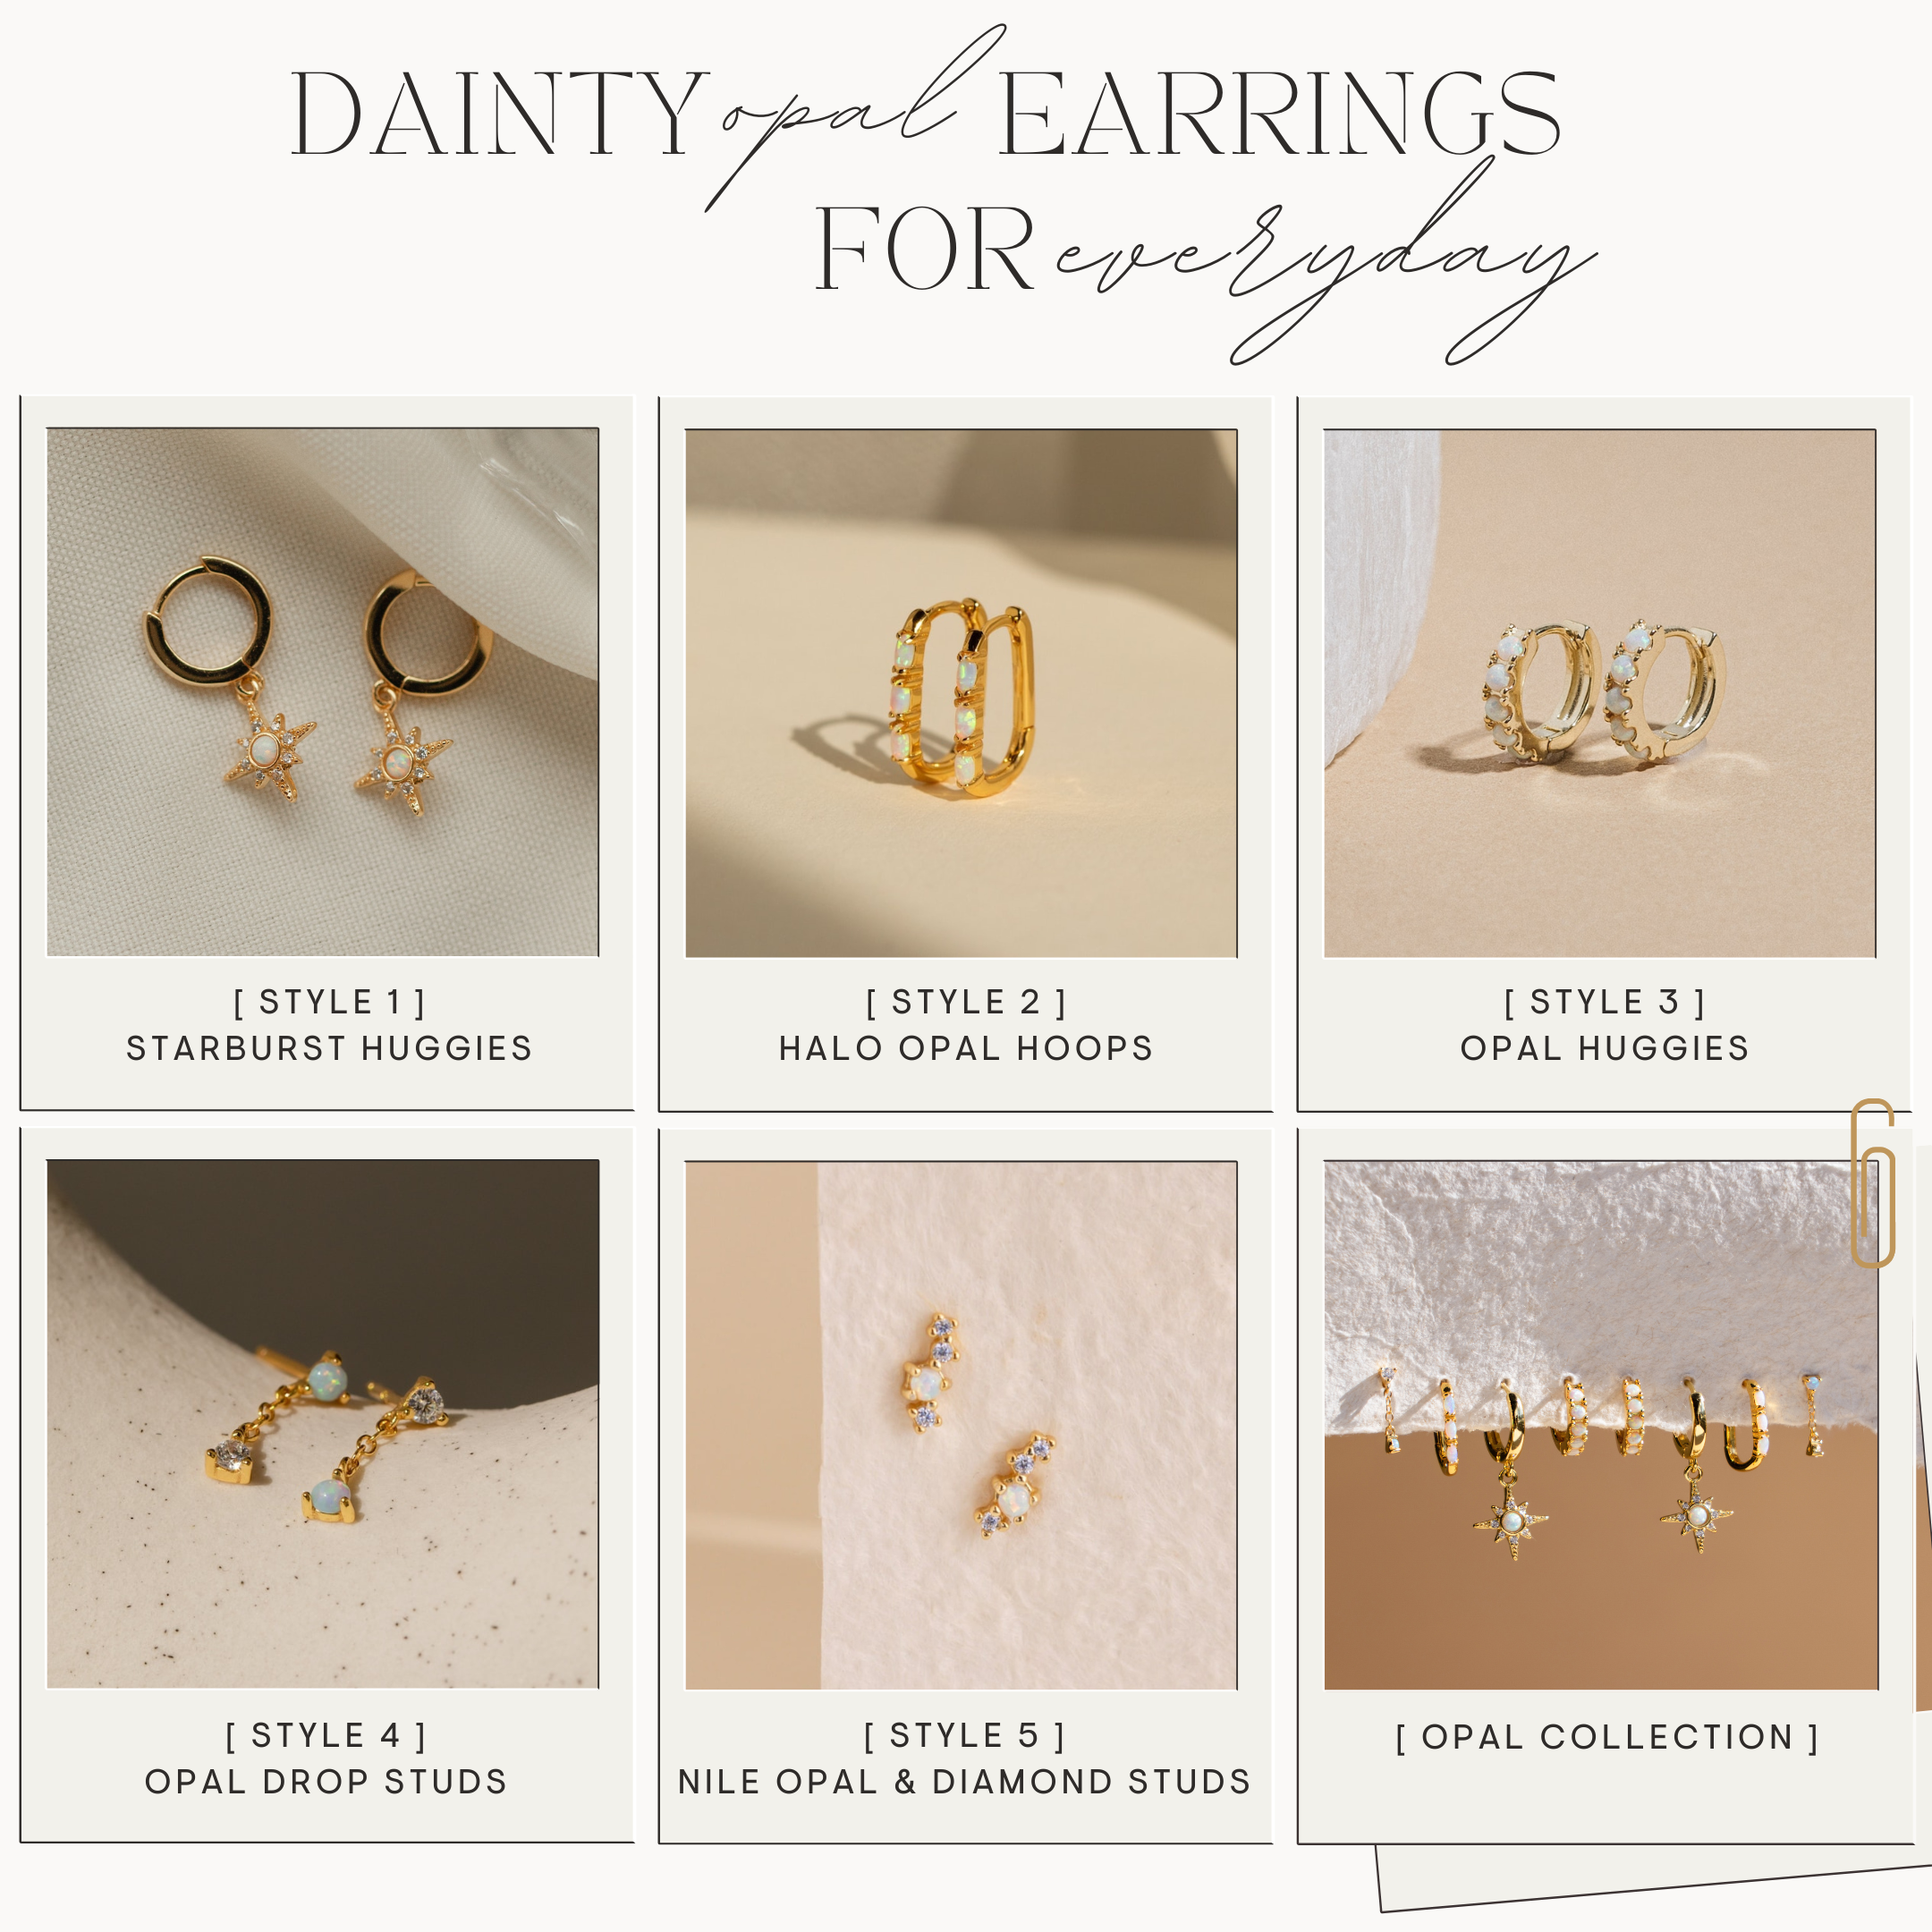 Dainty Opal Earrings